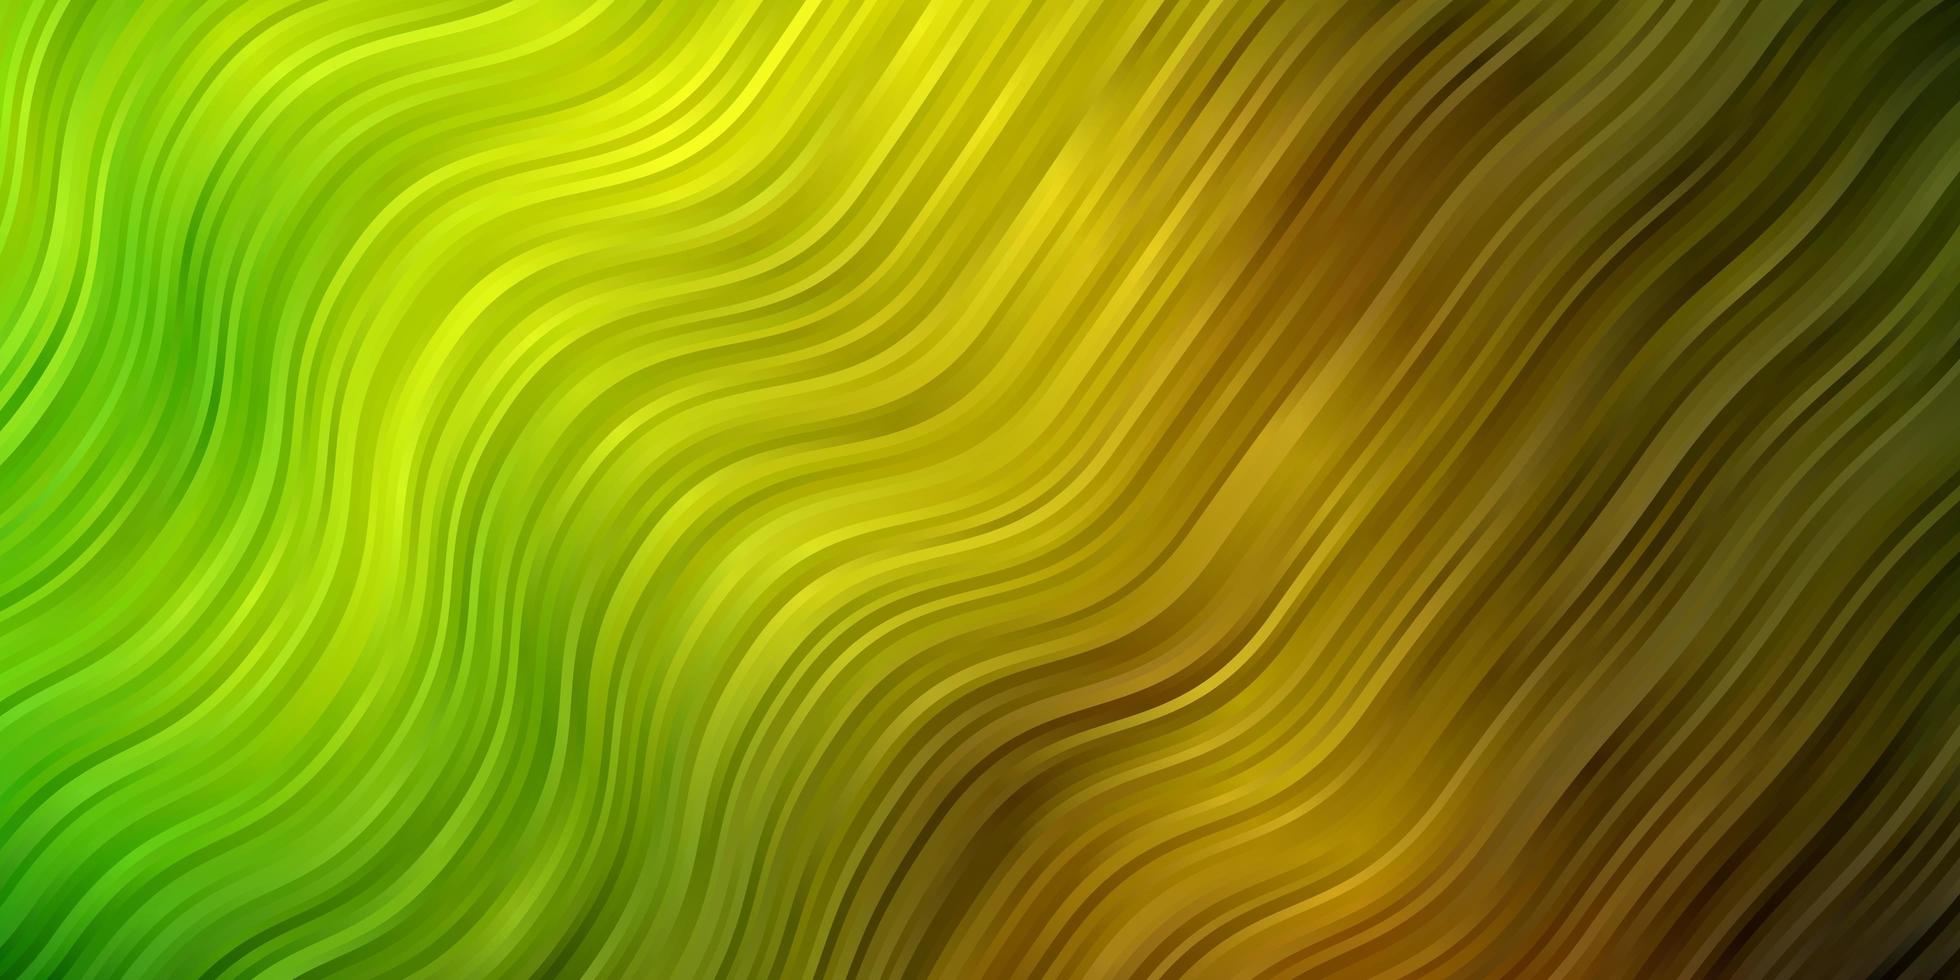 mörkgrön, gul vektormall med kurvor. illustration i halvtonstil med lutningskurvor. mönster för webbplatser, målsidor. vektor